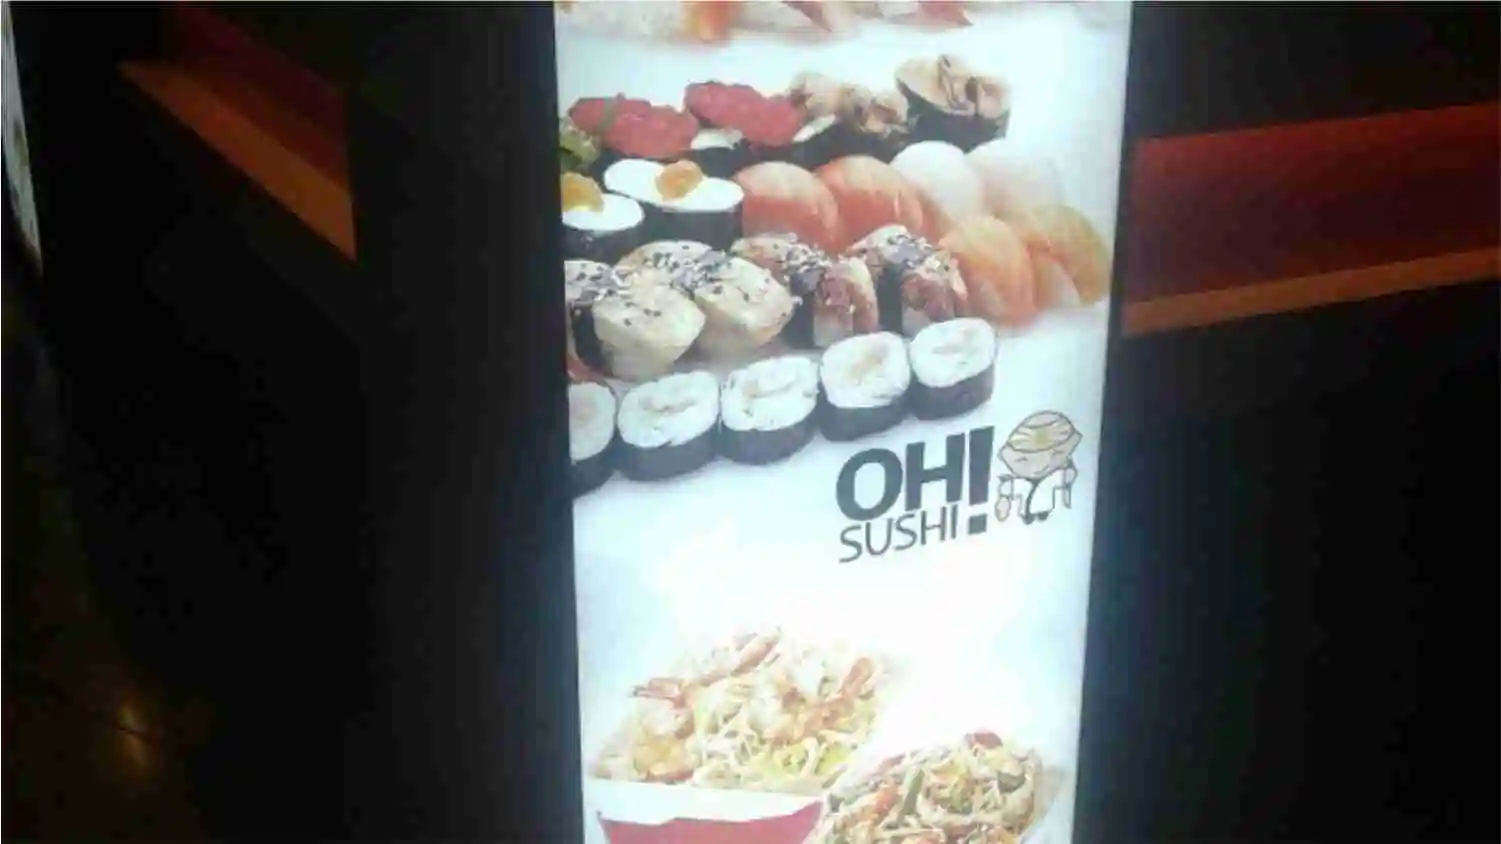 Oh Sushi — Рекламный лайтбокс кафе в торговом центре